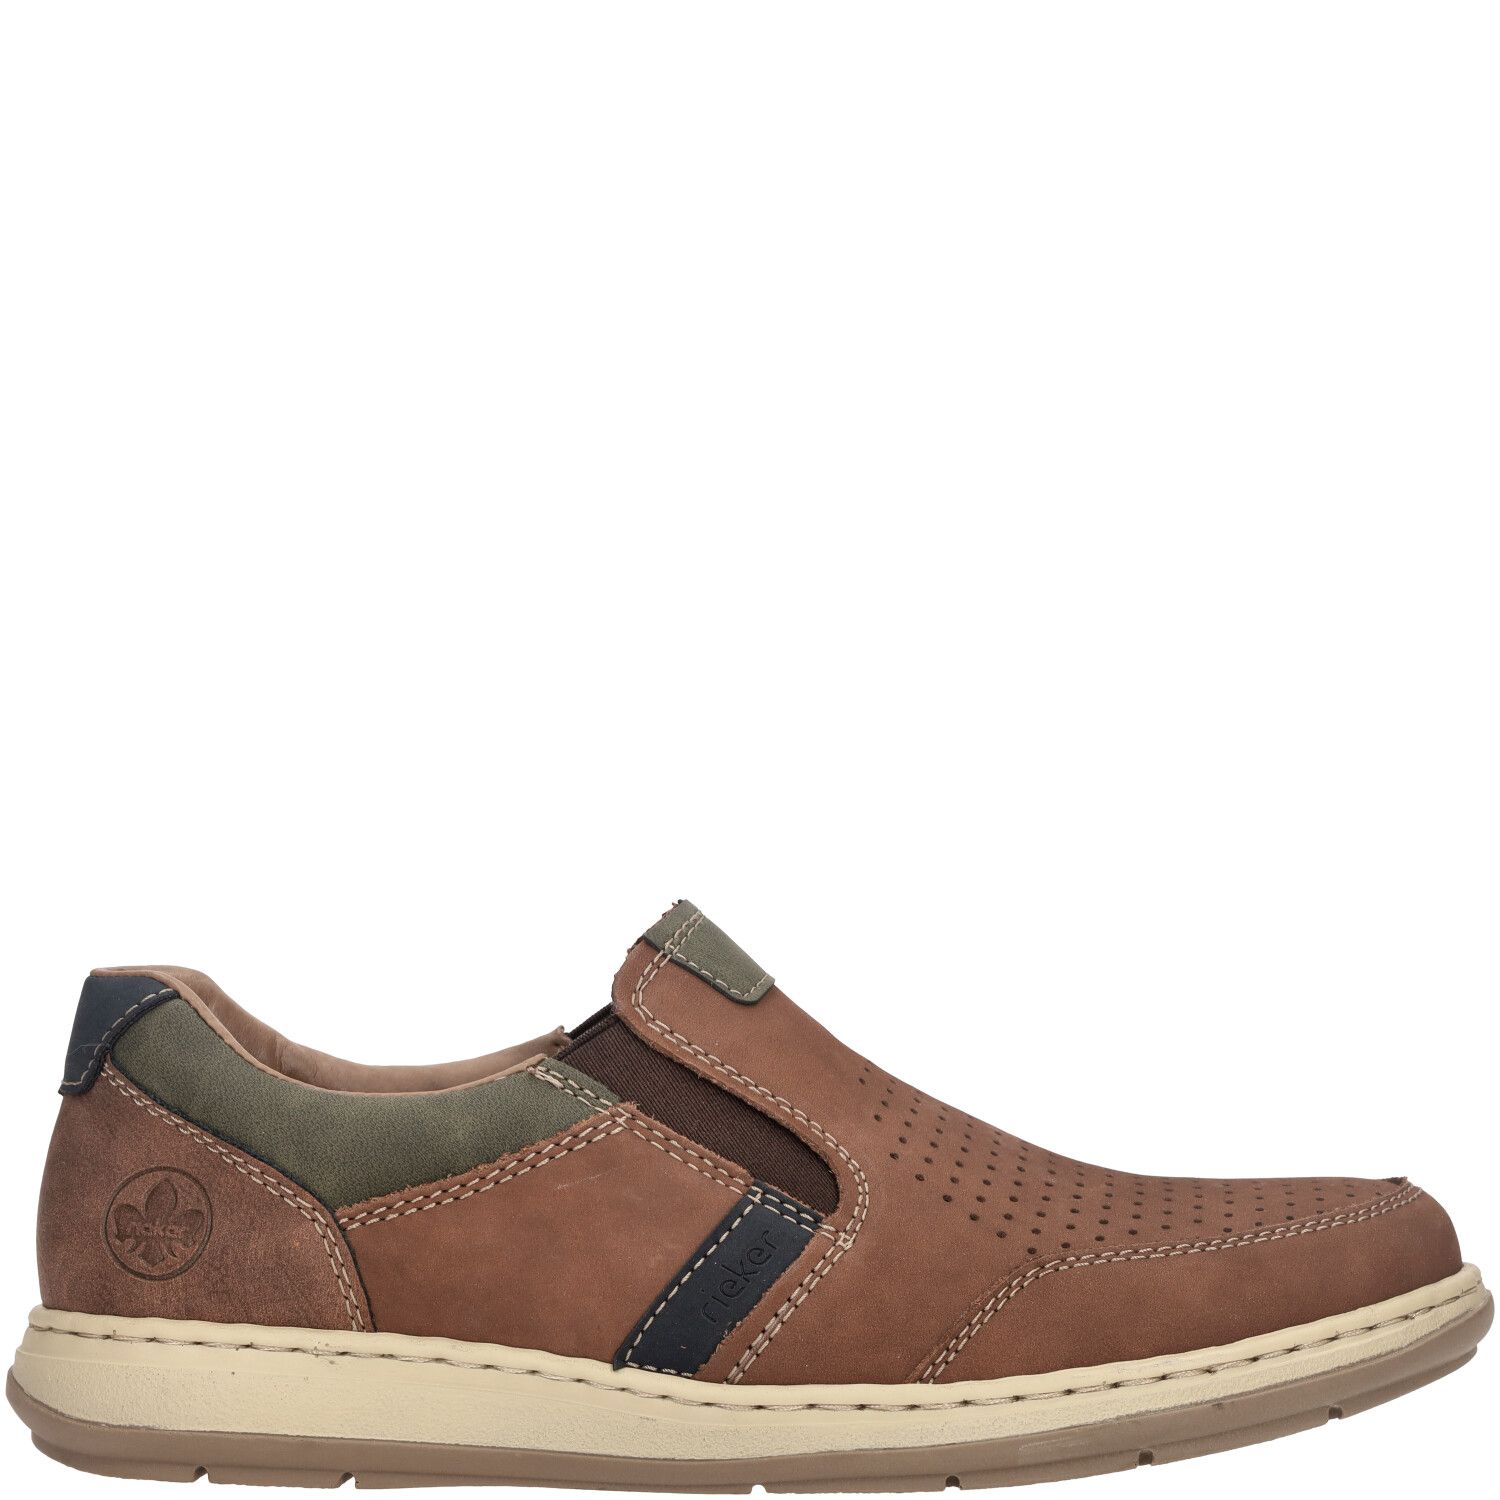 Rieker - Heren schoenen - 17371-25 - bruin - maat 41